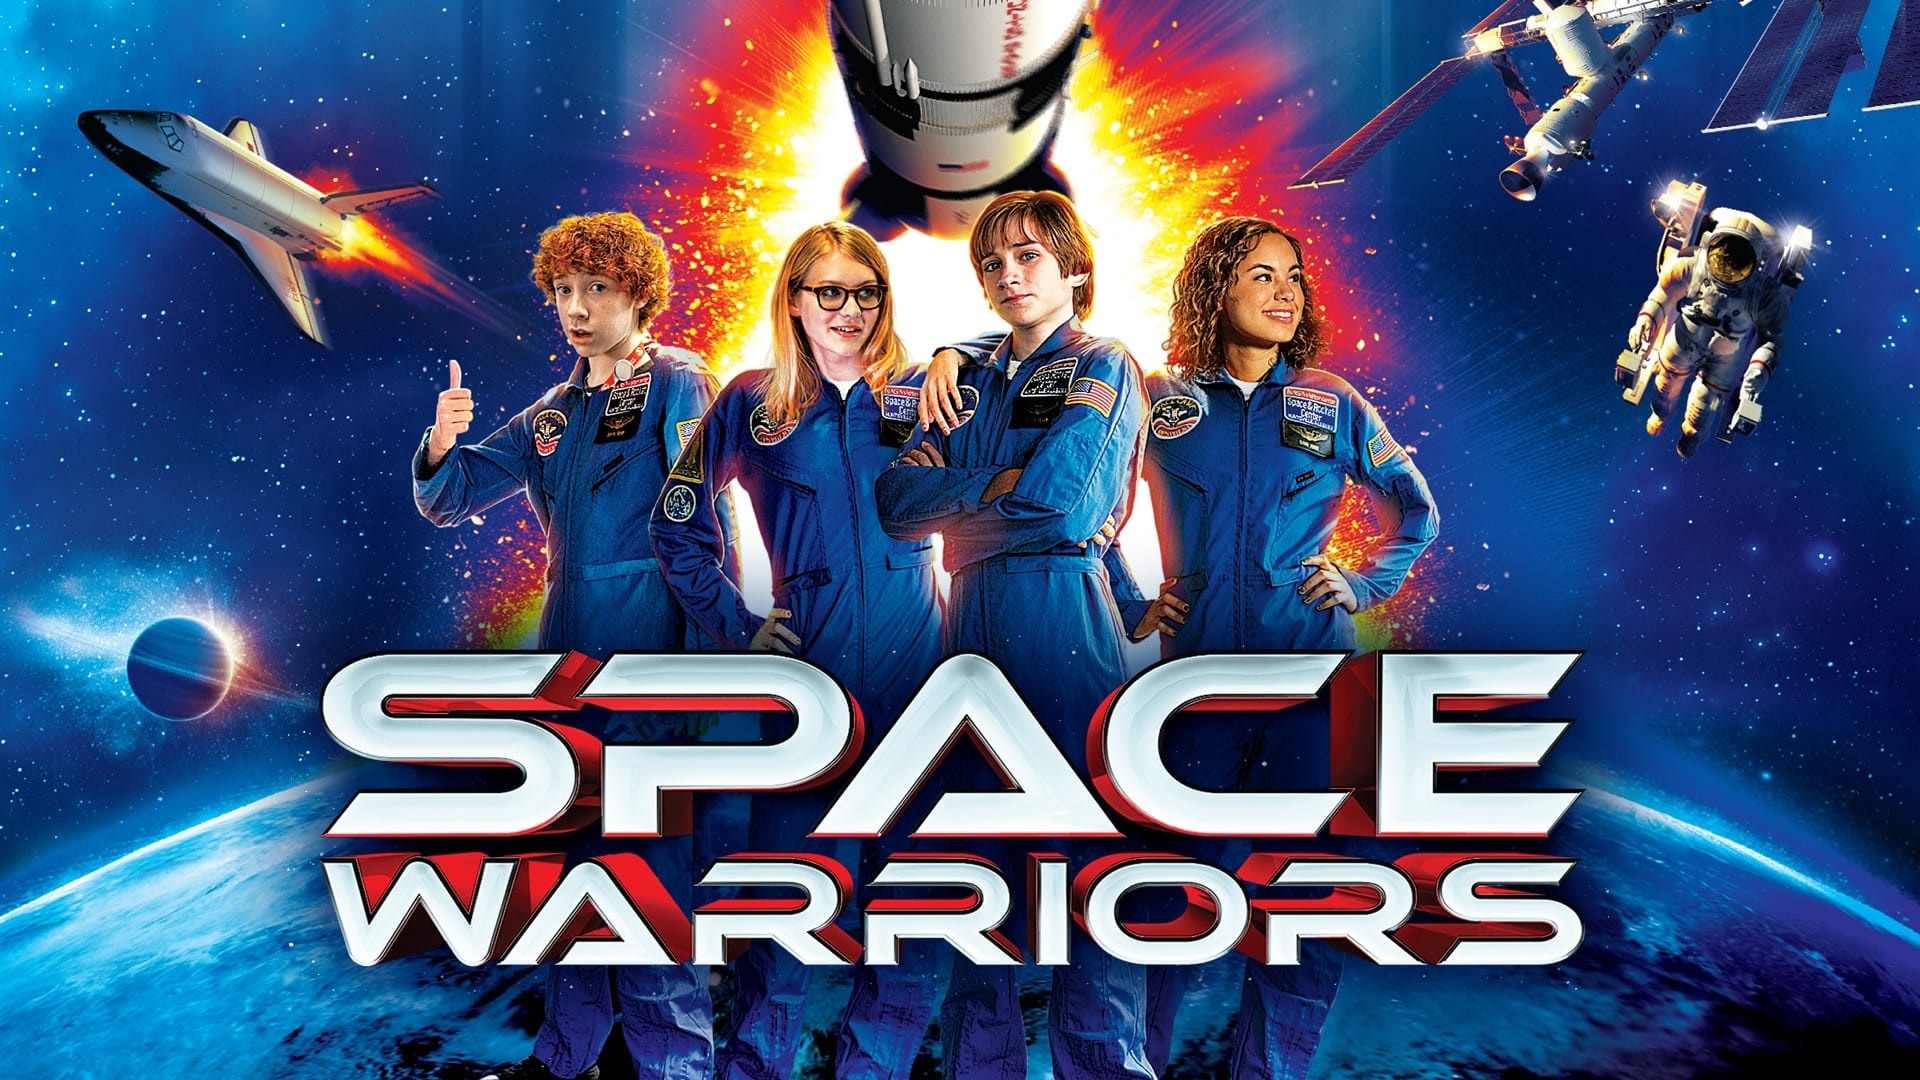 Space Warriors, les sauveurs de l'espace